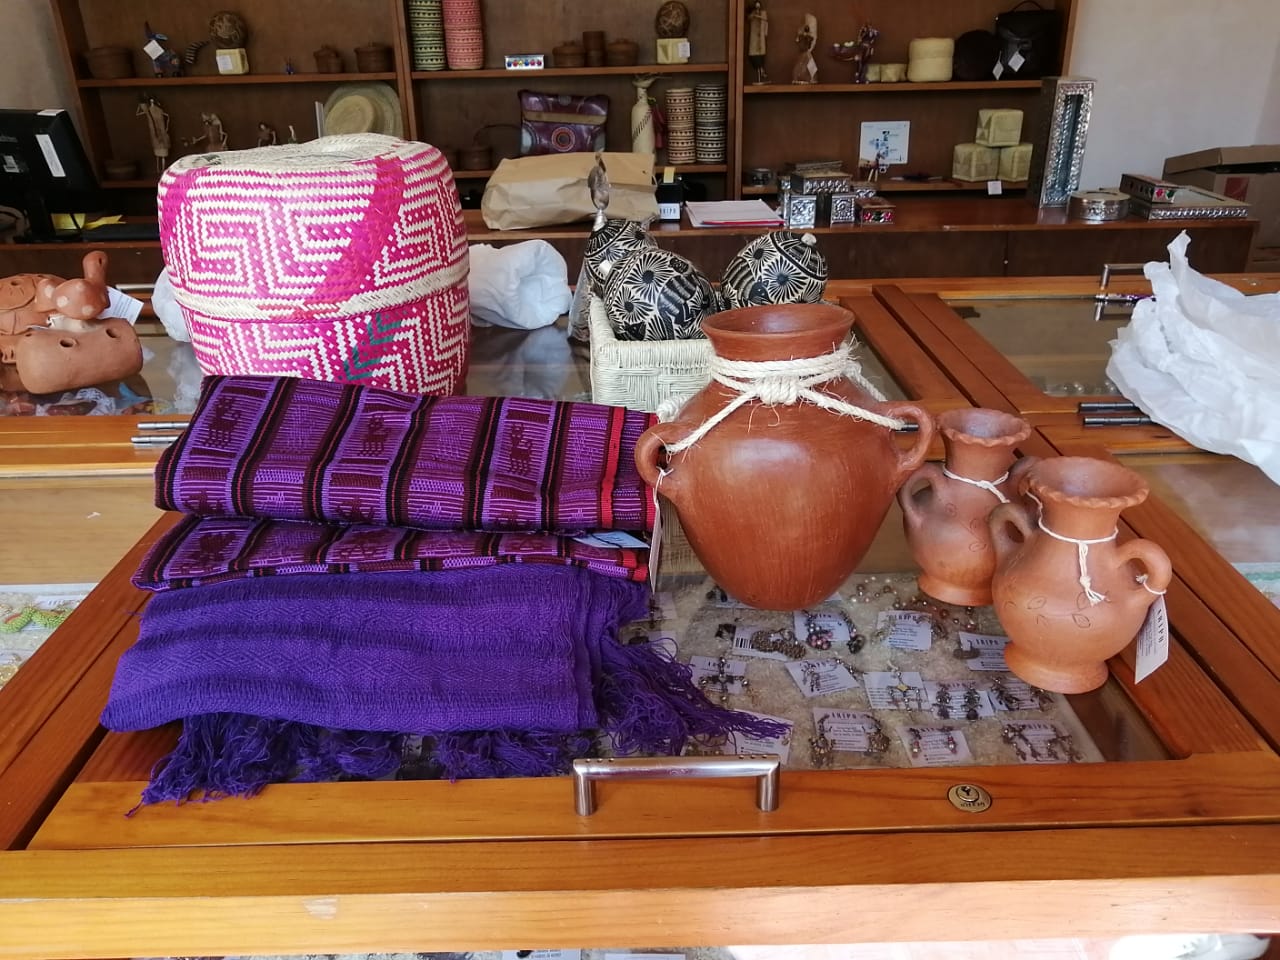 Gobierno de Oaxaca y Amazon ponen al alcance de todo el mundo las artesanías oaxaqueñas